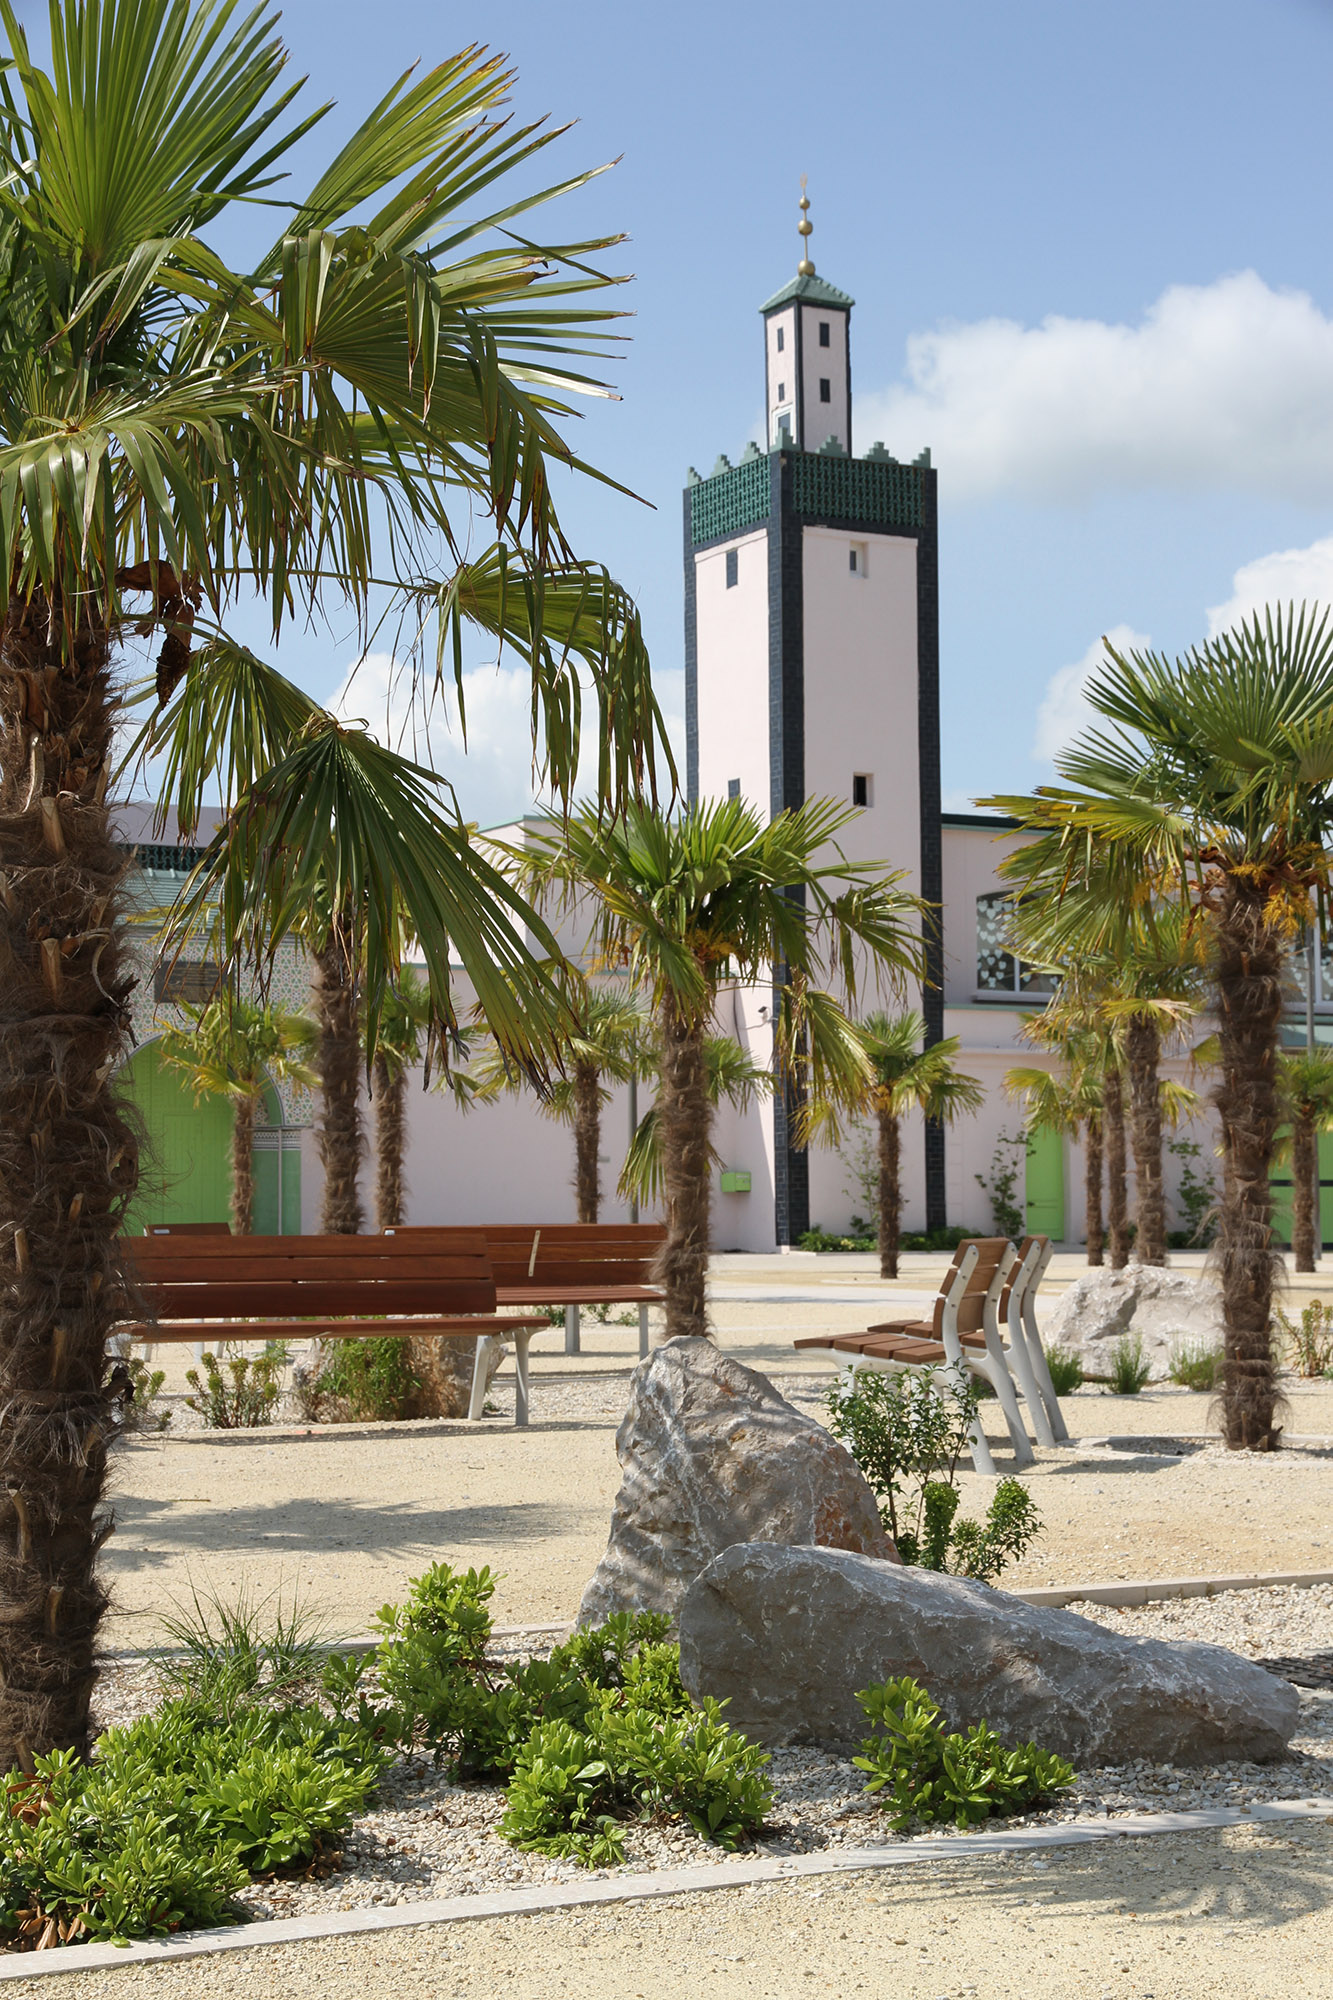 La place Franco-mauresque et la vue sur le minaret de la mosquée de Mantes-la-Jolie